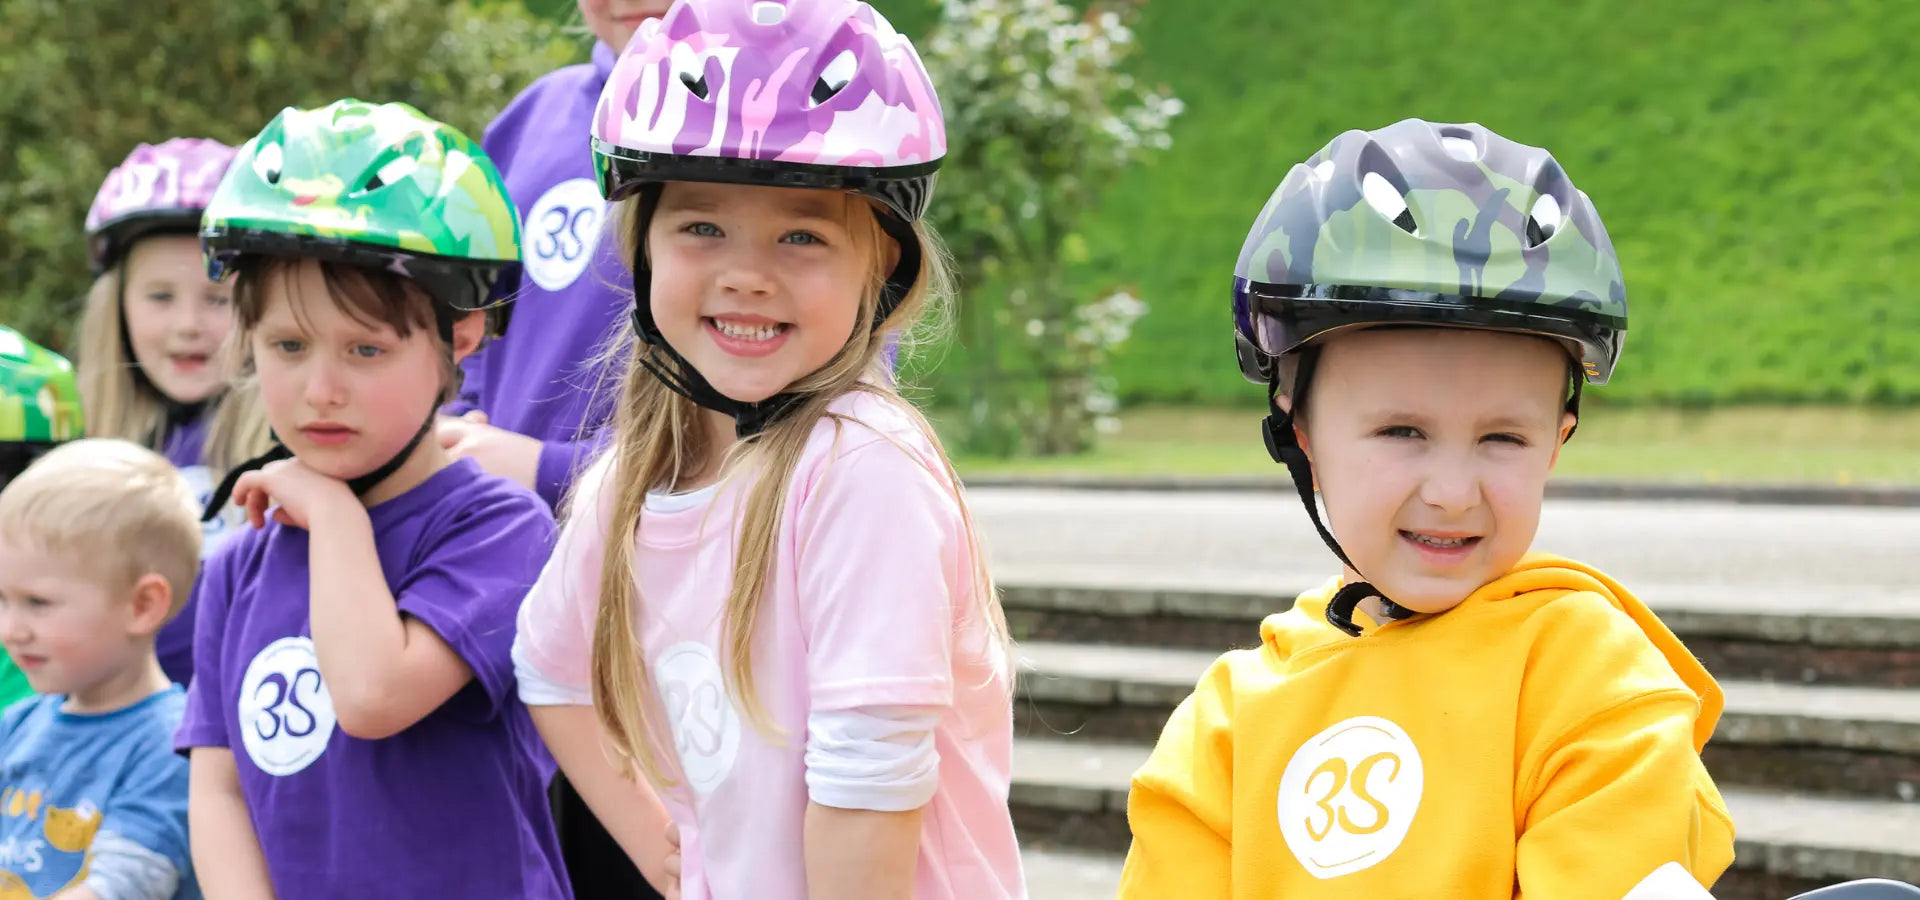 SafetyMax Helmets | Kids Safety Helmet